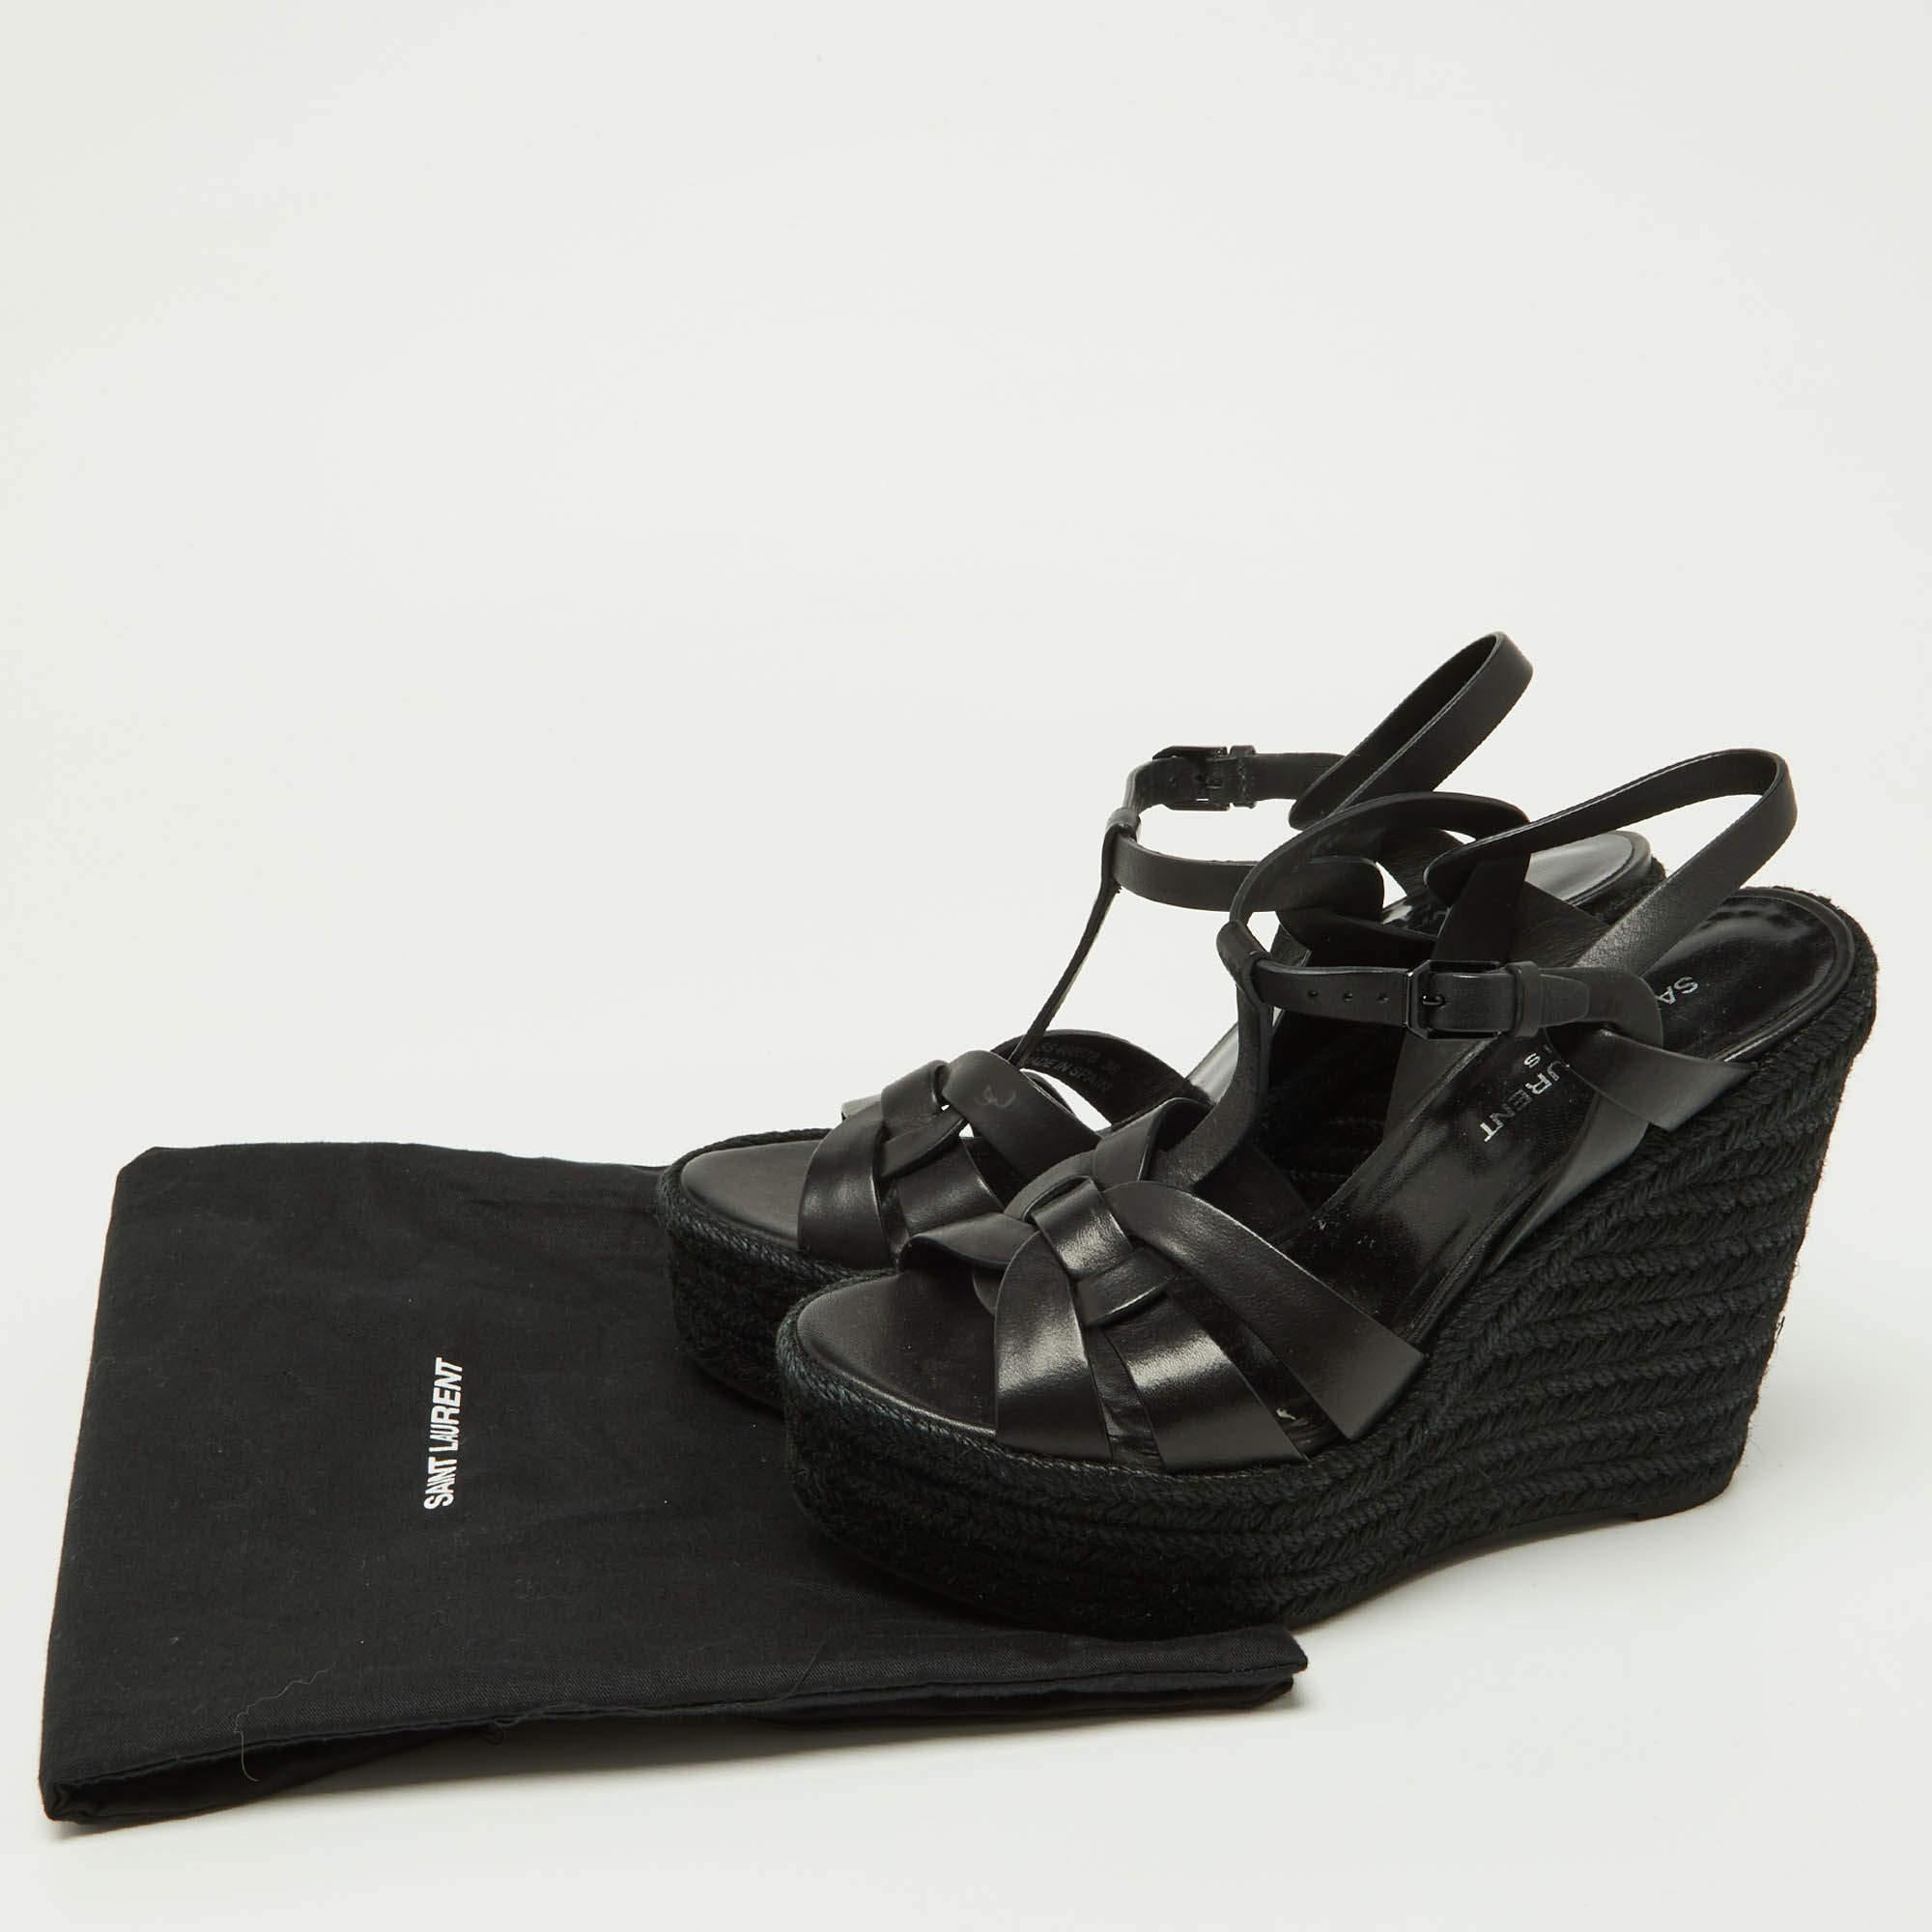 Saint Laurent Black Leather Tribute Espadrilles Wedge Sandals Size 38 5